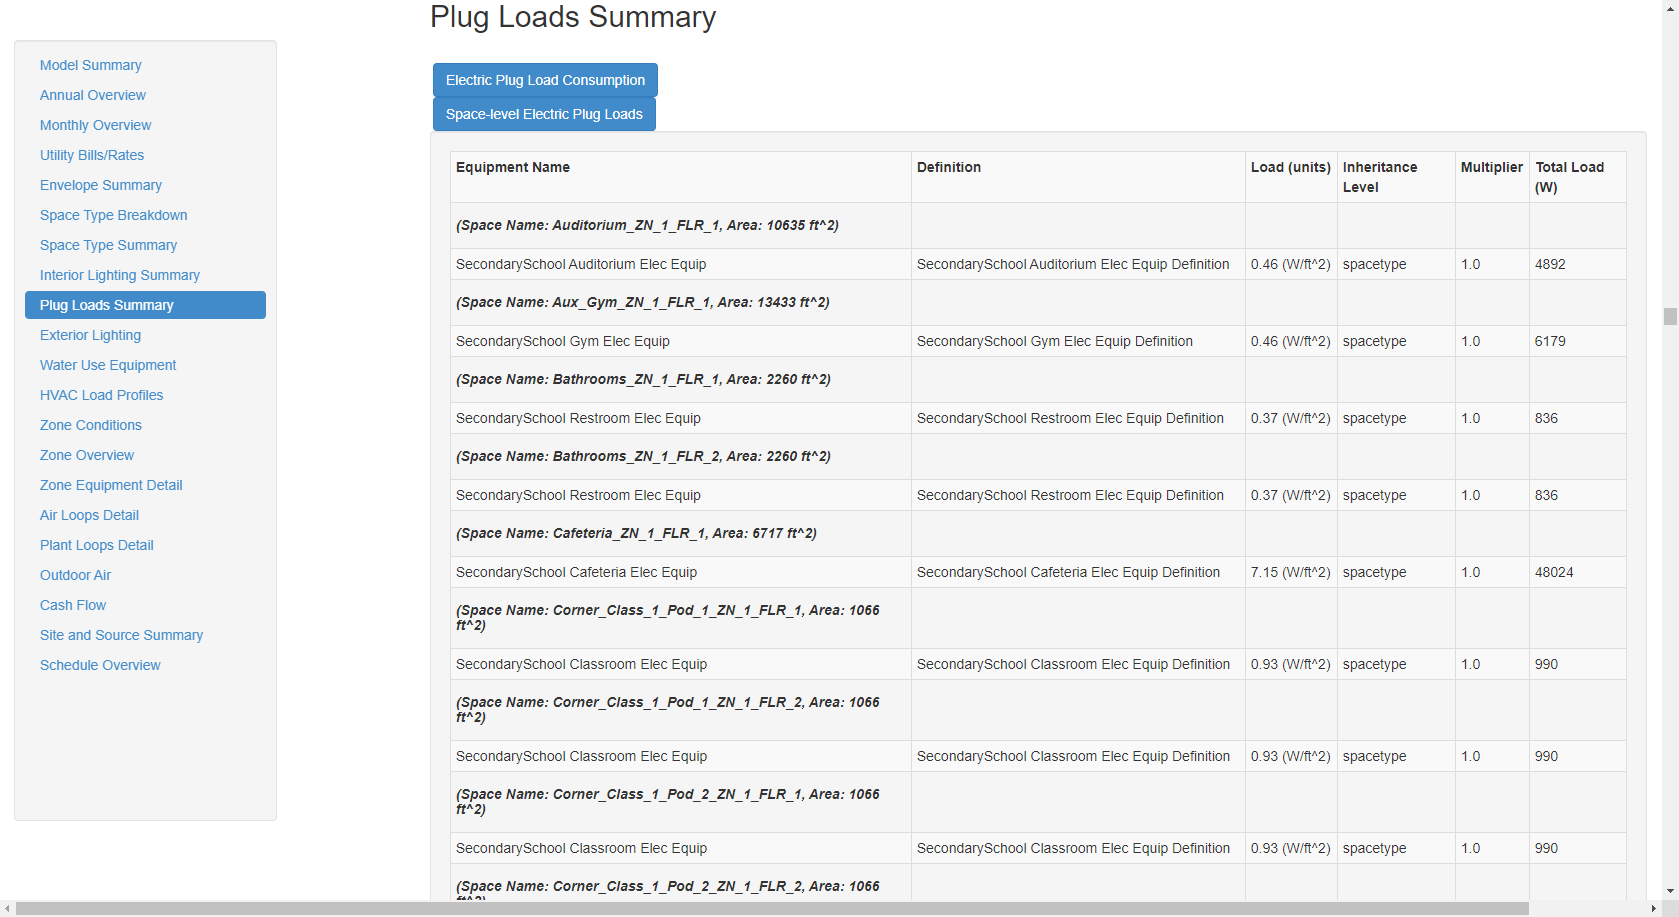 Above: Plug Loads Summary table